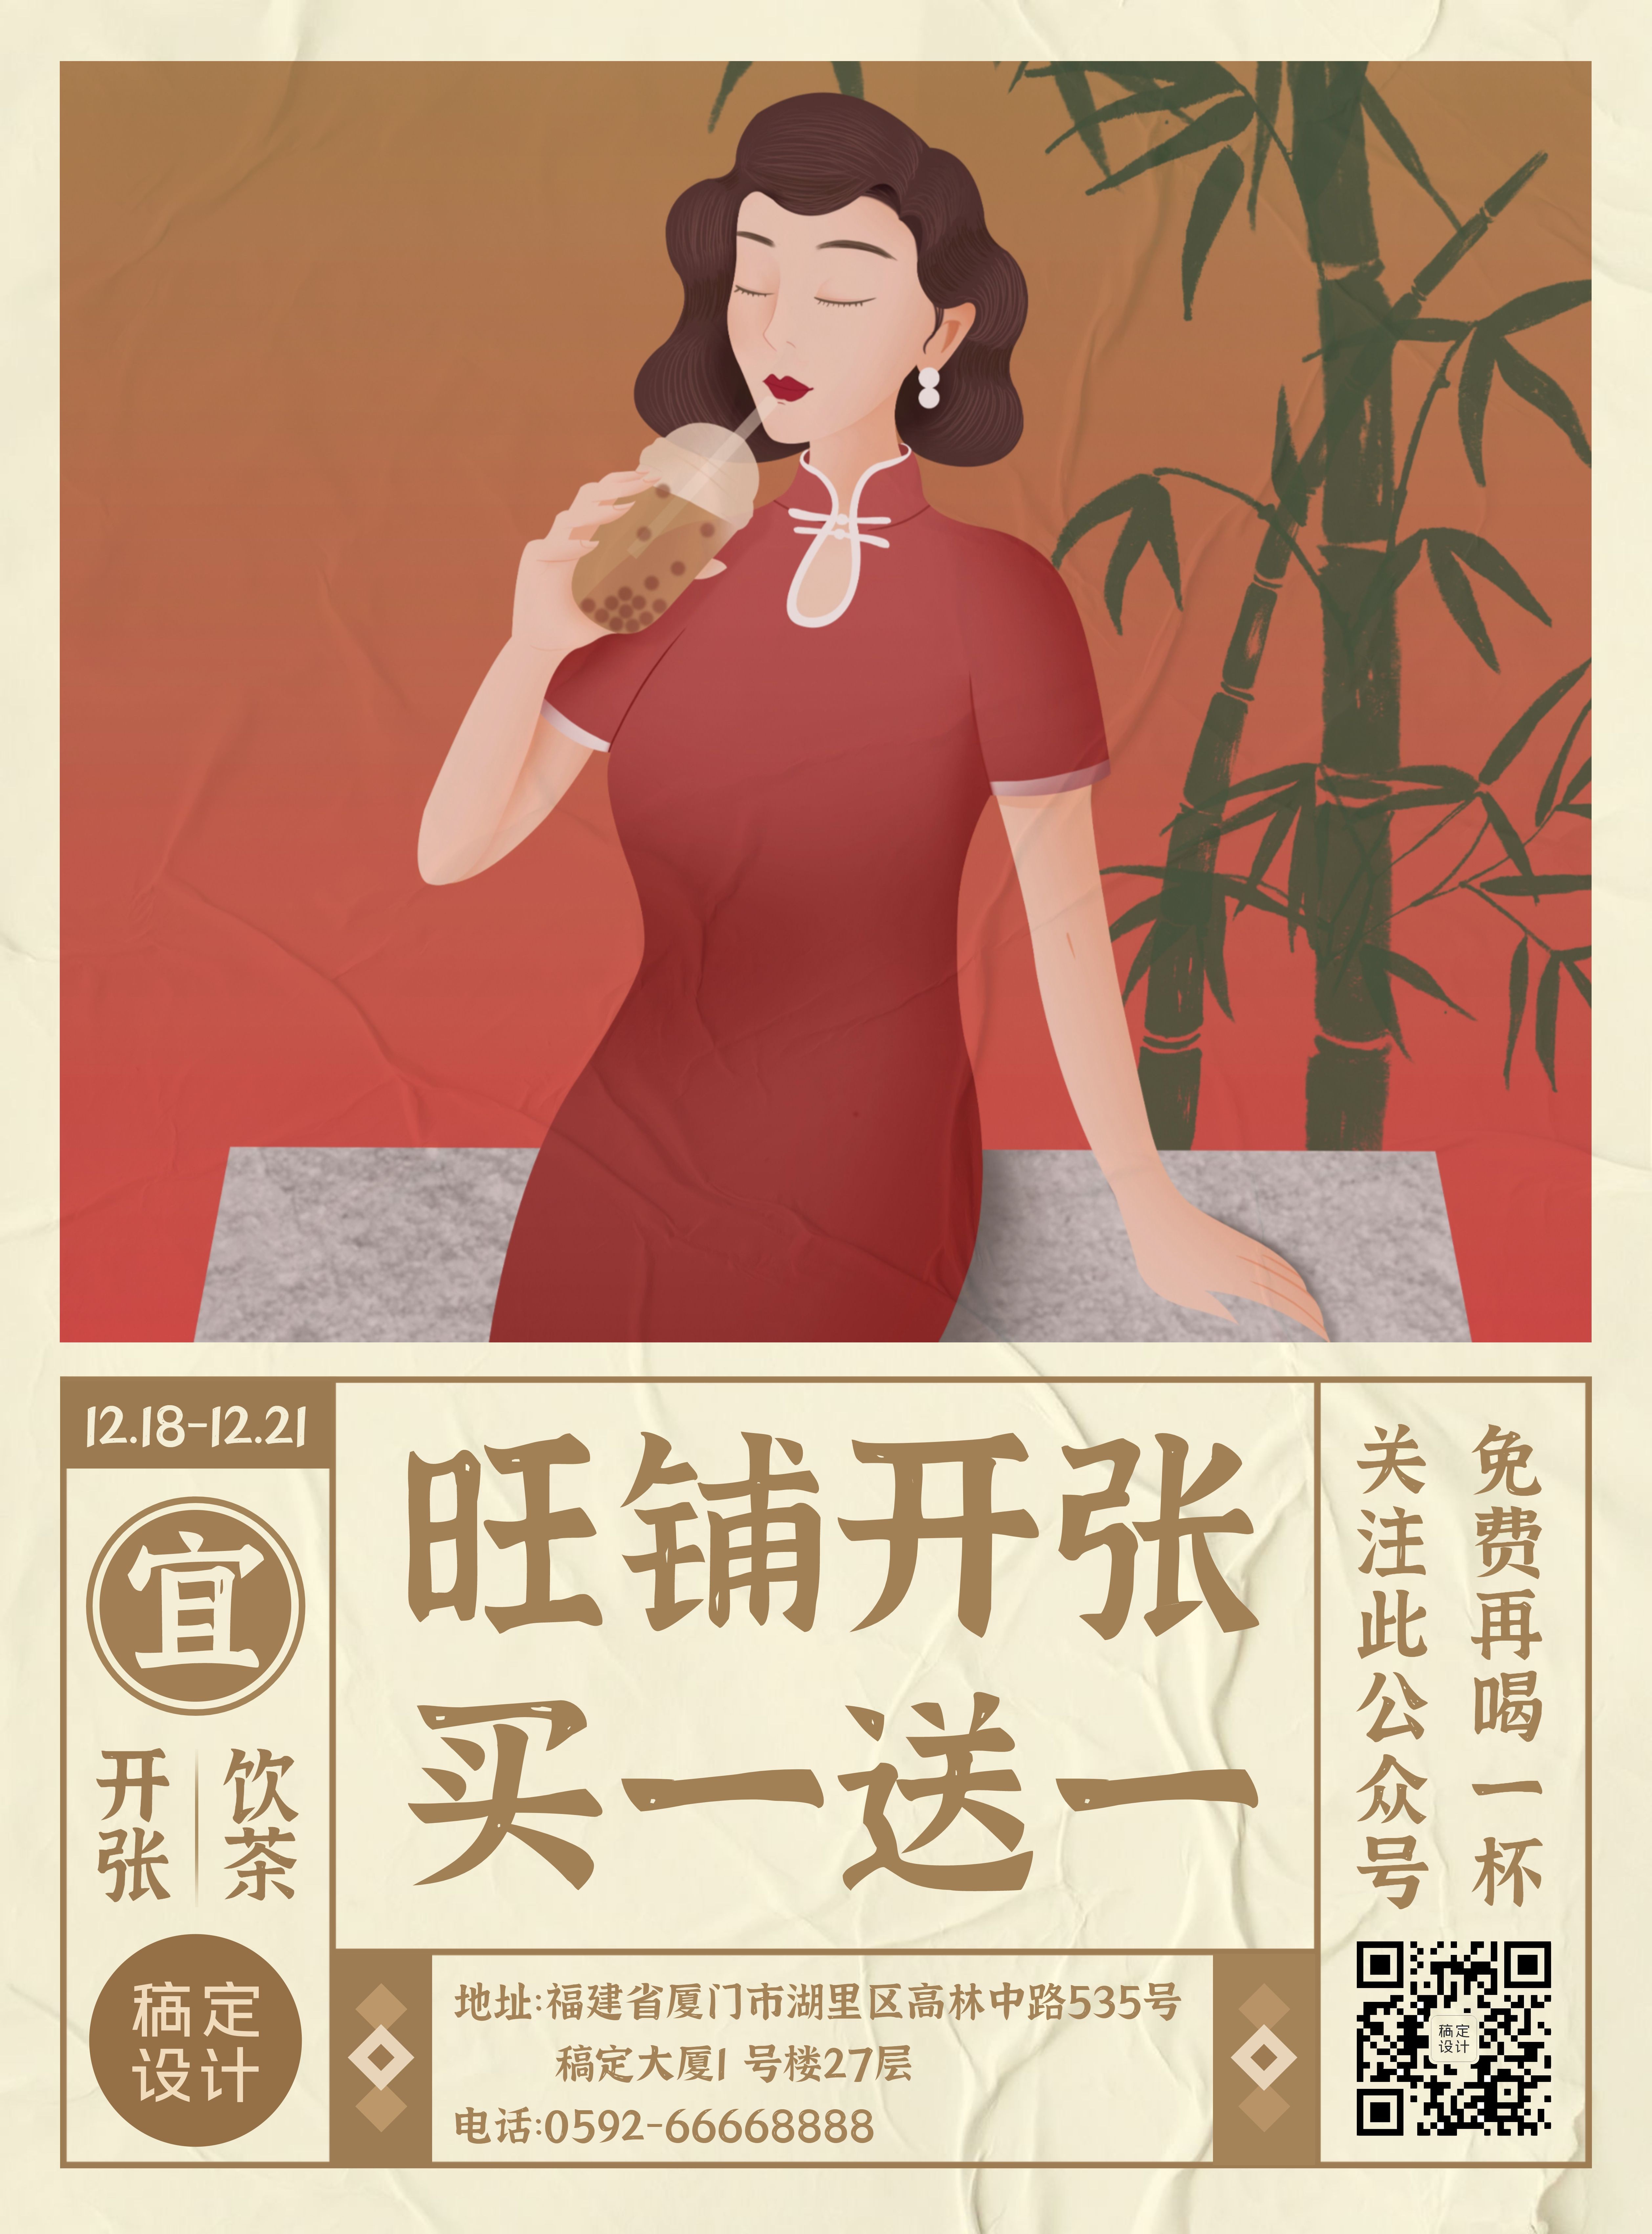 茶饮奶茶开业活动印刷海报预览效果